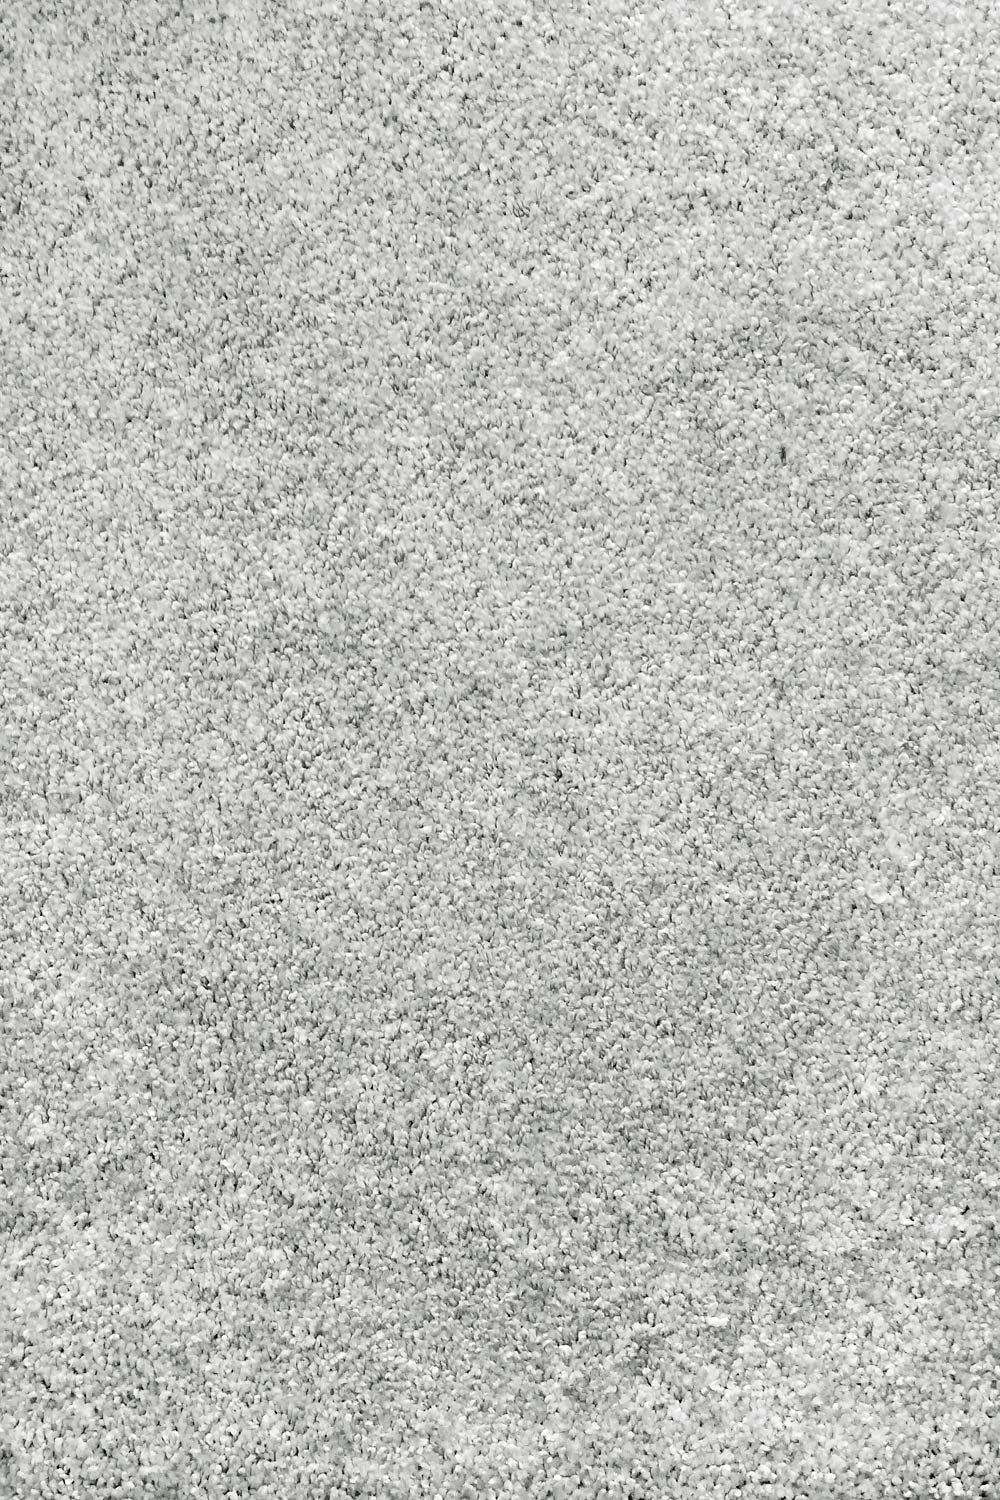 Metrážový koberec CAPRIOLO 90 400 cm